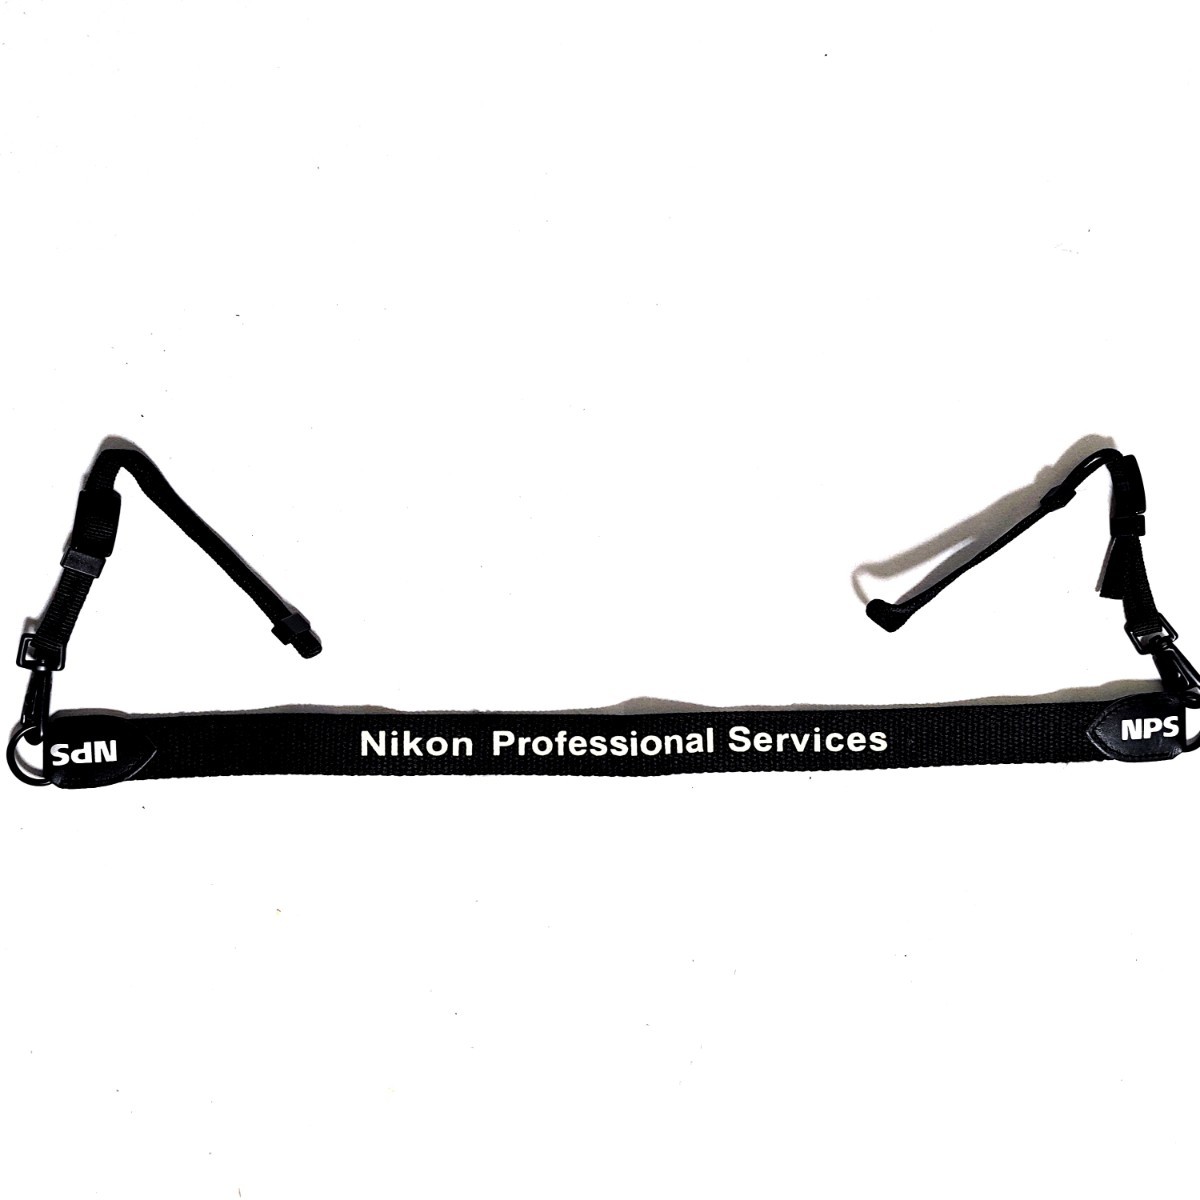 話題の行列 ニコン Nikon Services NPS ストラップ Professional